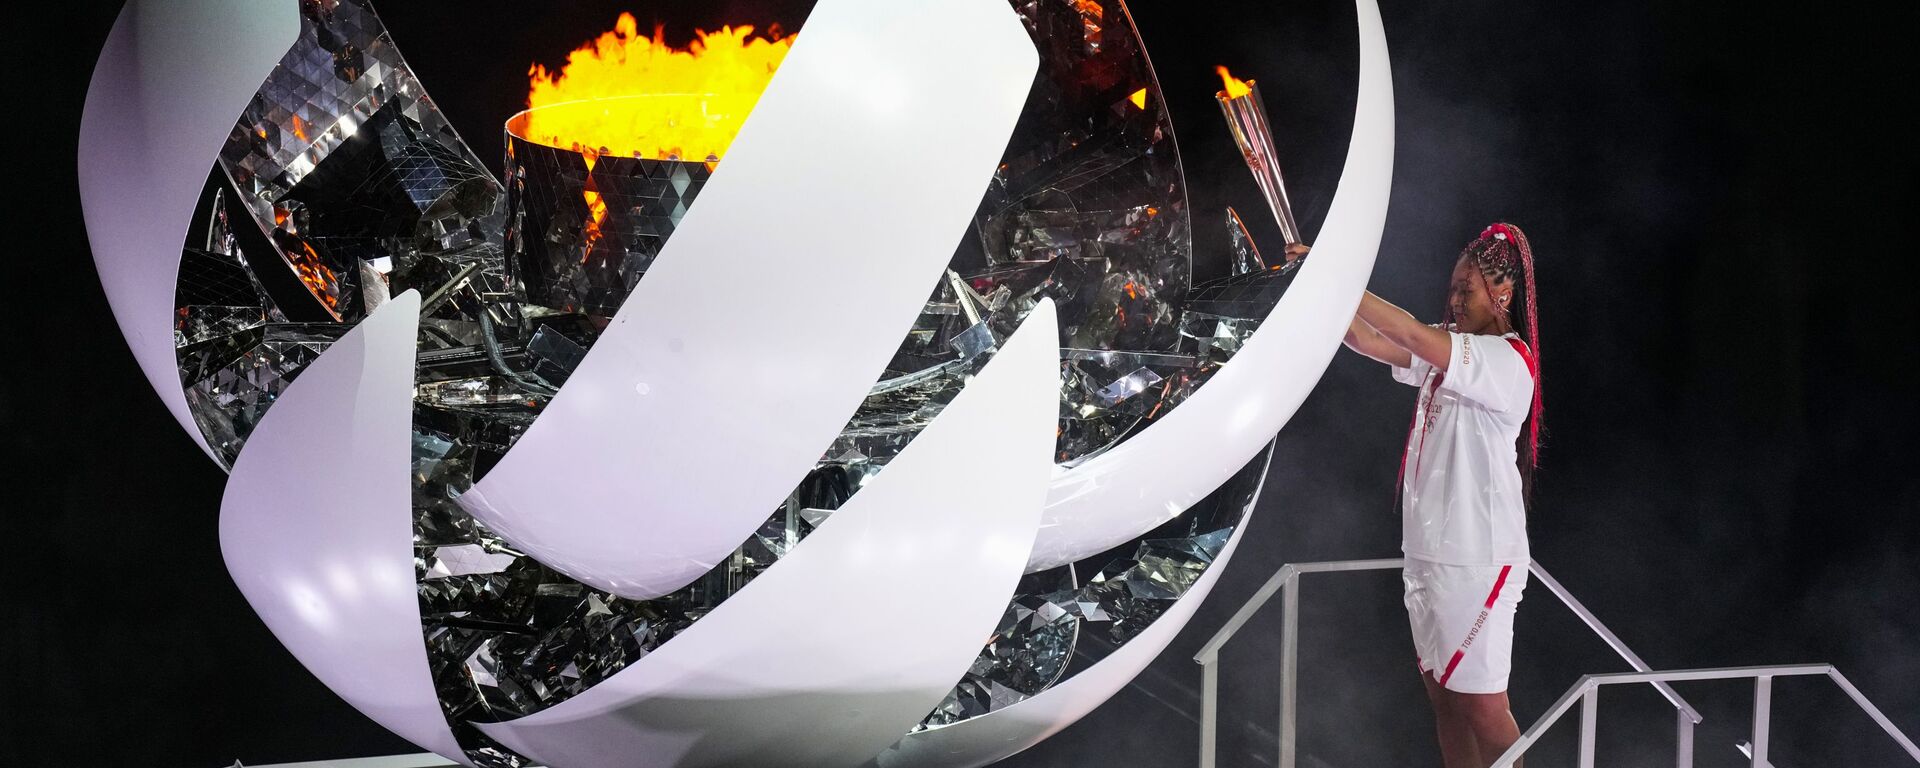 Теннисистка Наоми Осака зажигает олимпийский огонь на церемонии открытия XXXII летних Олимпийских игр в Токио - Sputnik Moldova, 1920, 23.09.2021